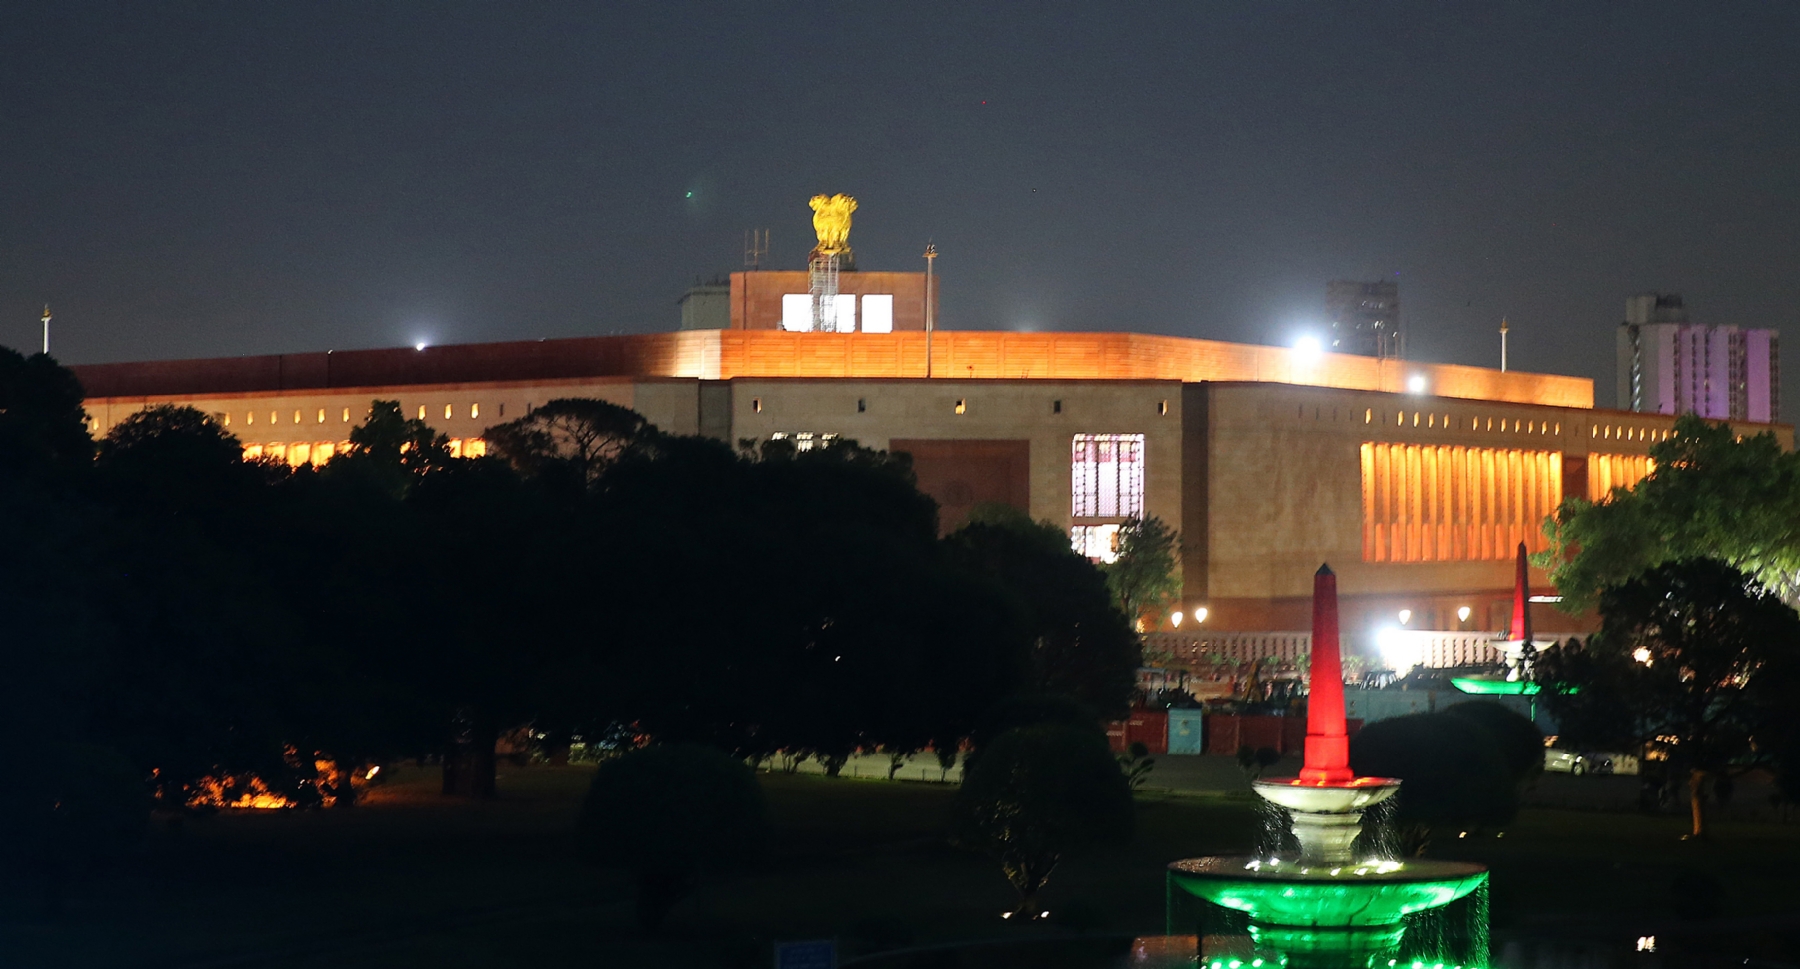 नई दिल्ली में बुधवार 24 मई को नया संसद भवन रोशनी से जगमगाता हुए। इस बवन का 28 मई को प्रधानमंत्री नरेन्द्र मोदी उद्घाटन करेंगे। हिन्दुस्थान समाचार/ फोटो गणेश बिष्ट